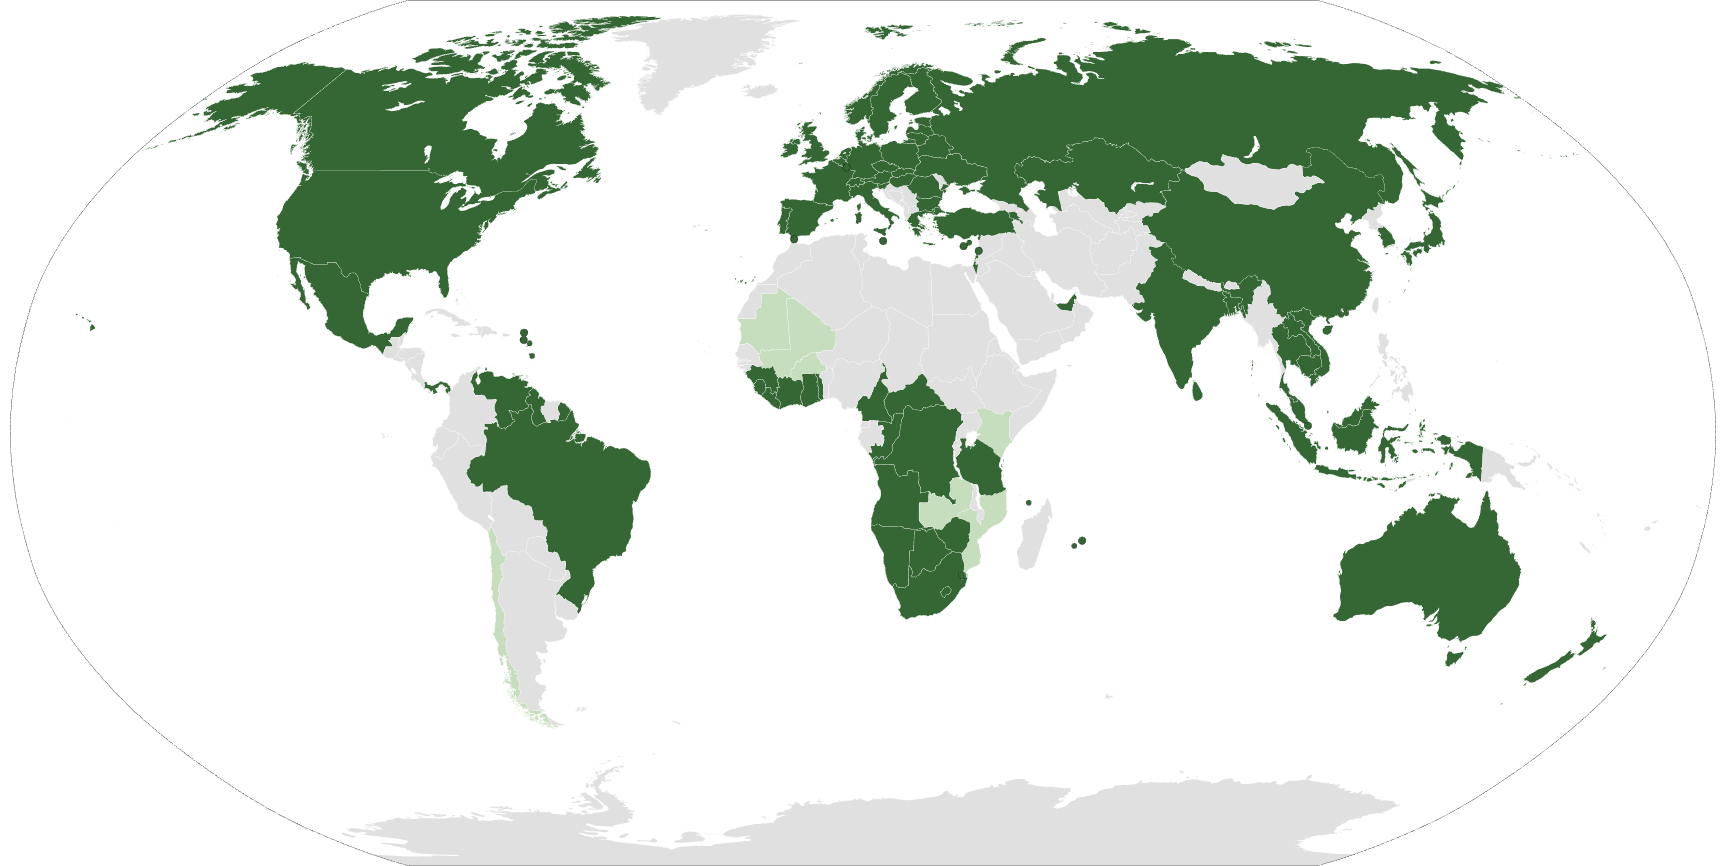 kimberley process participants map